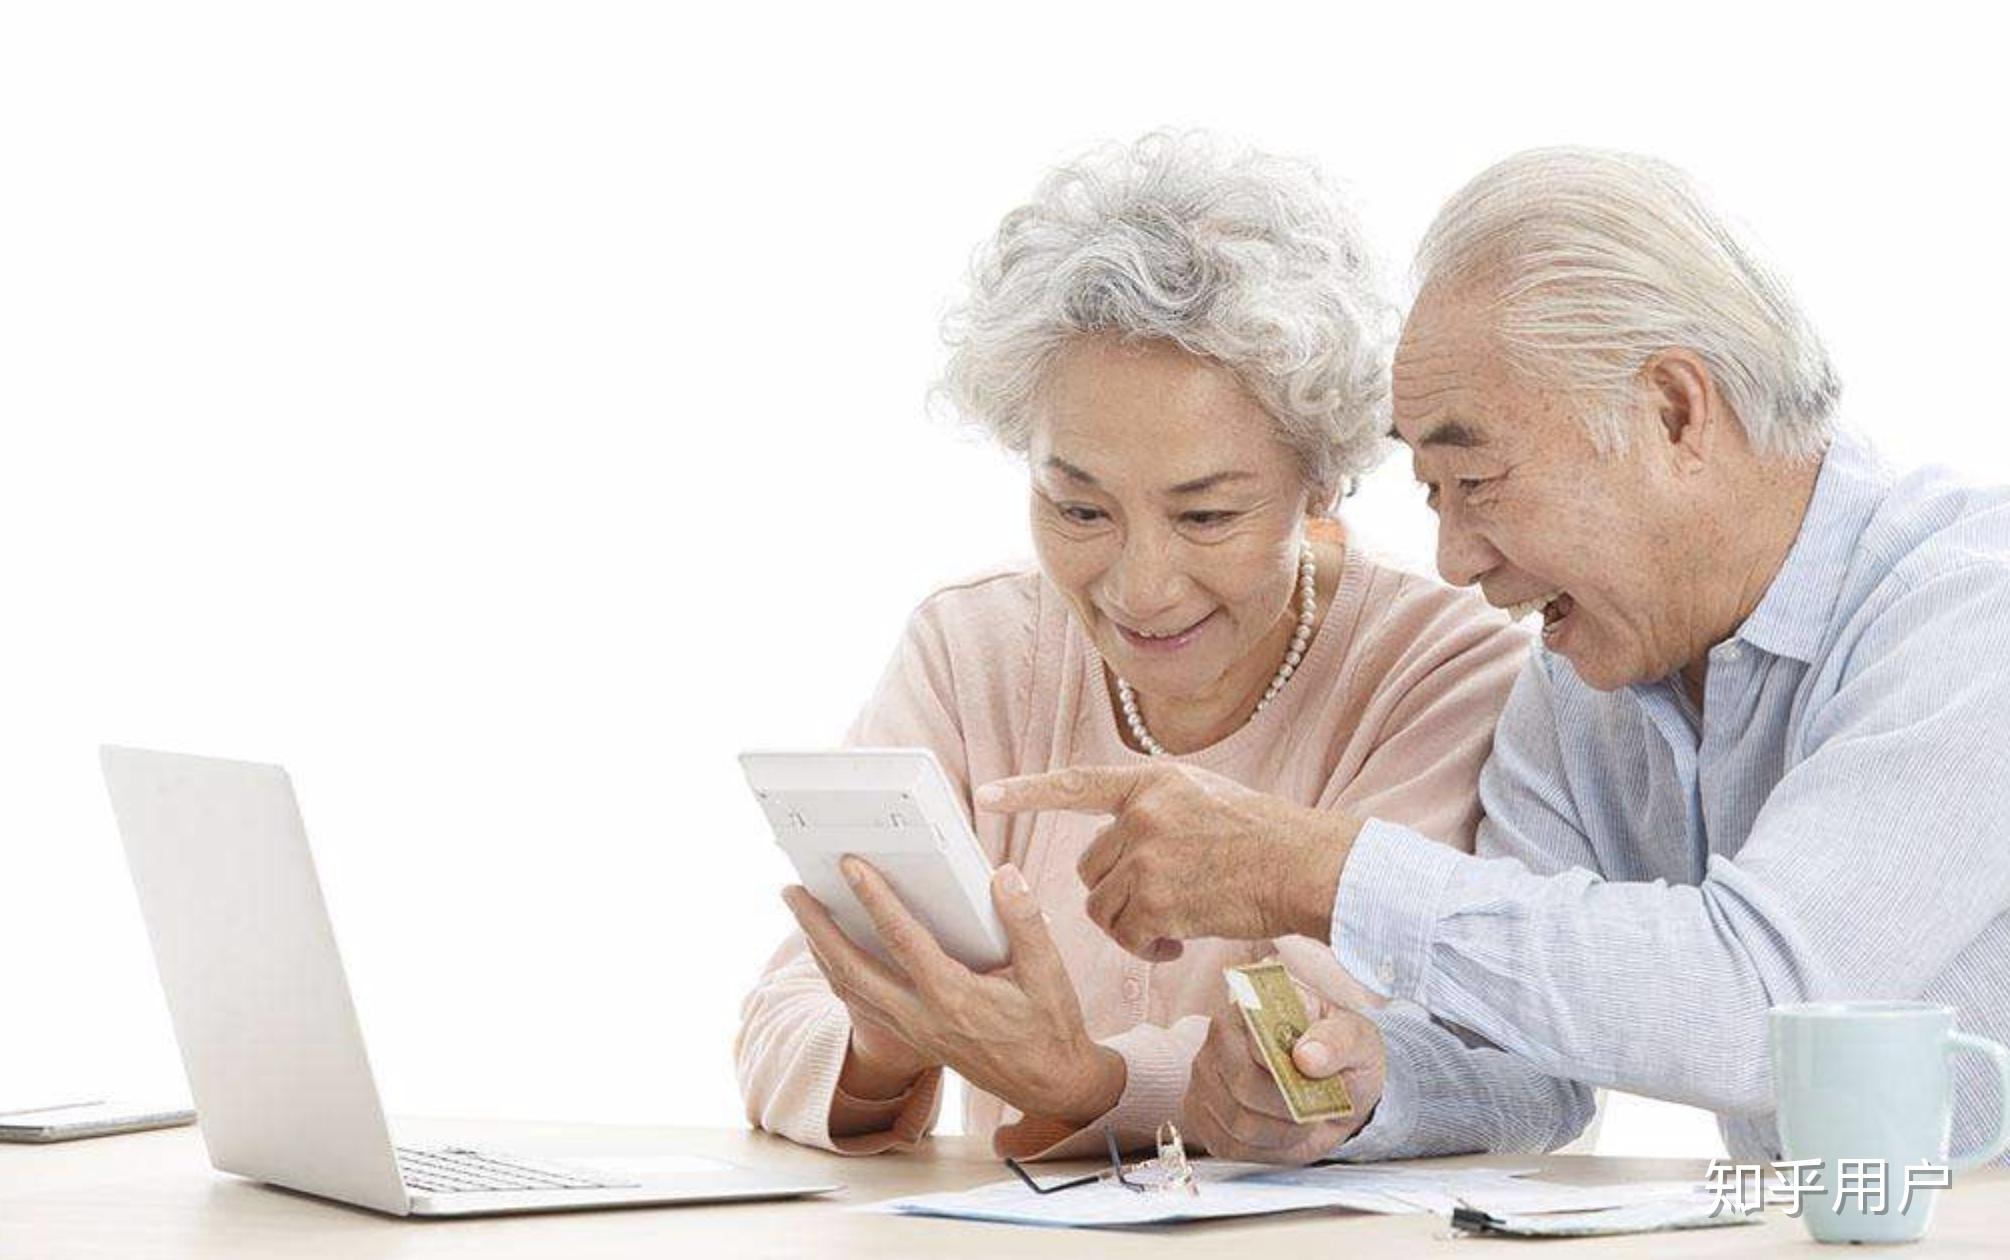 当下的科技产品对老年人有哪些不友好之处?